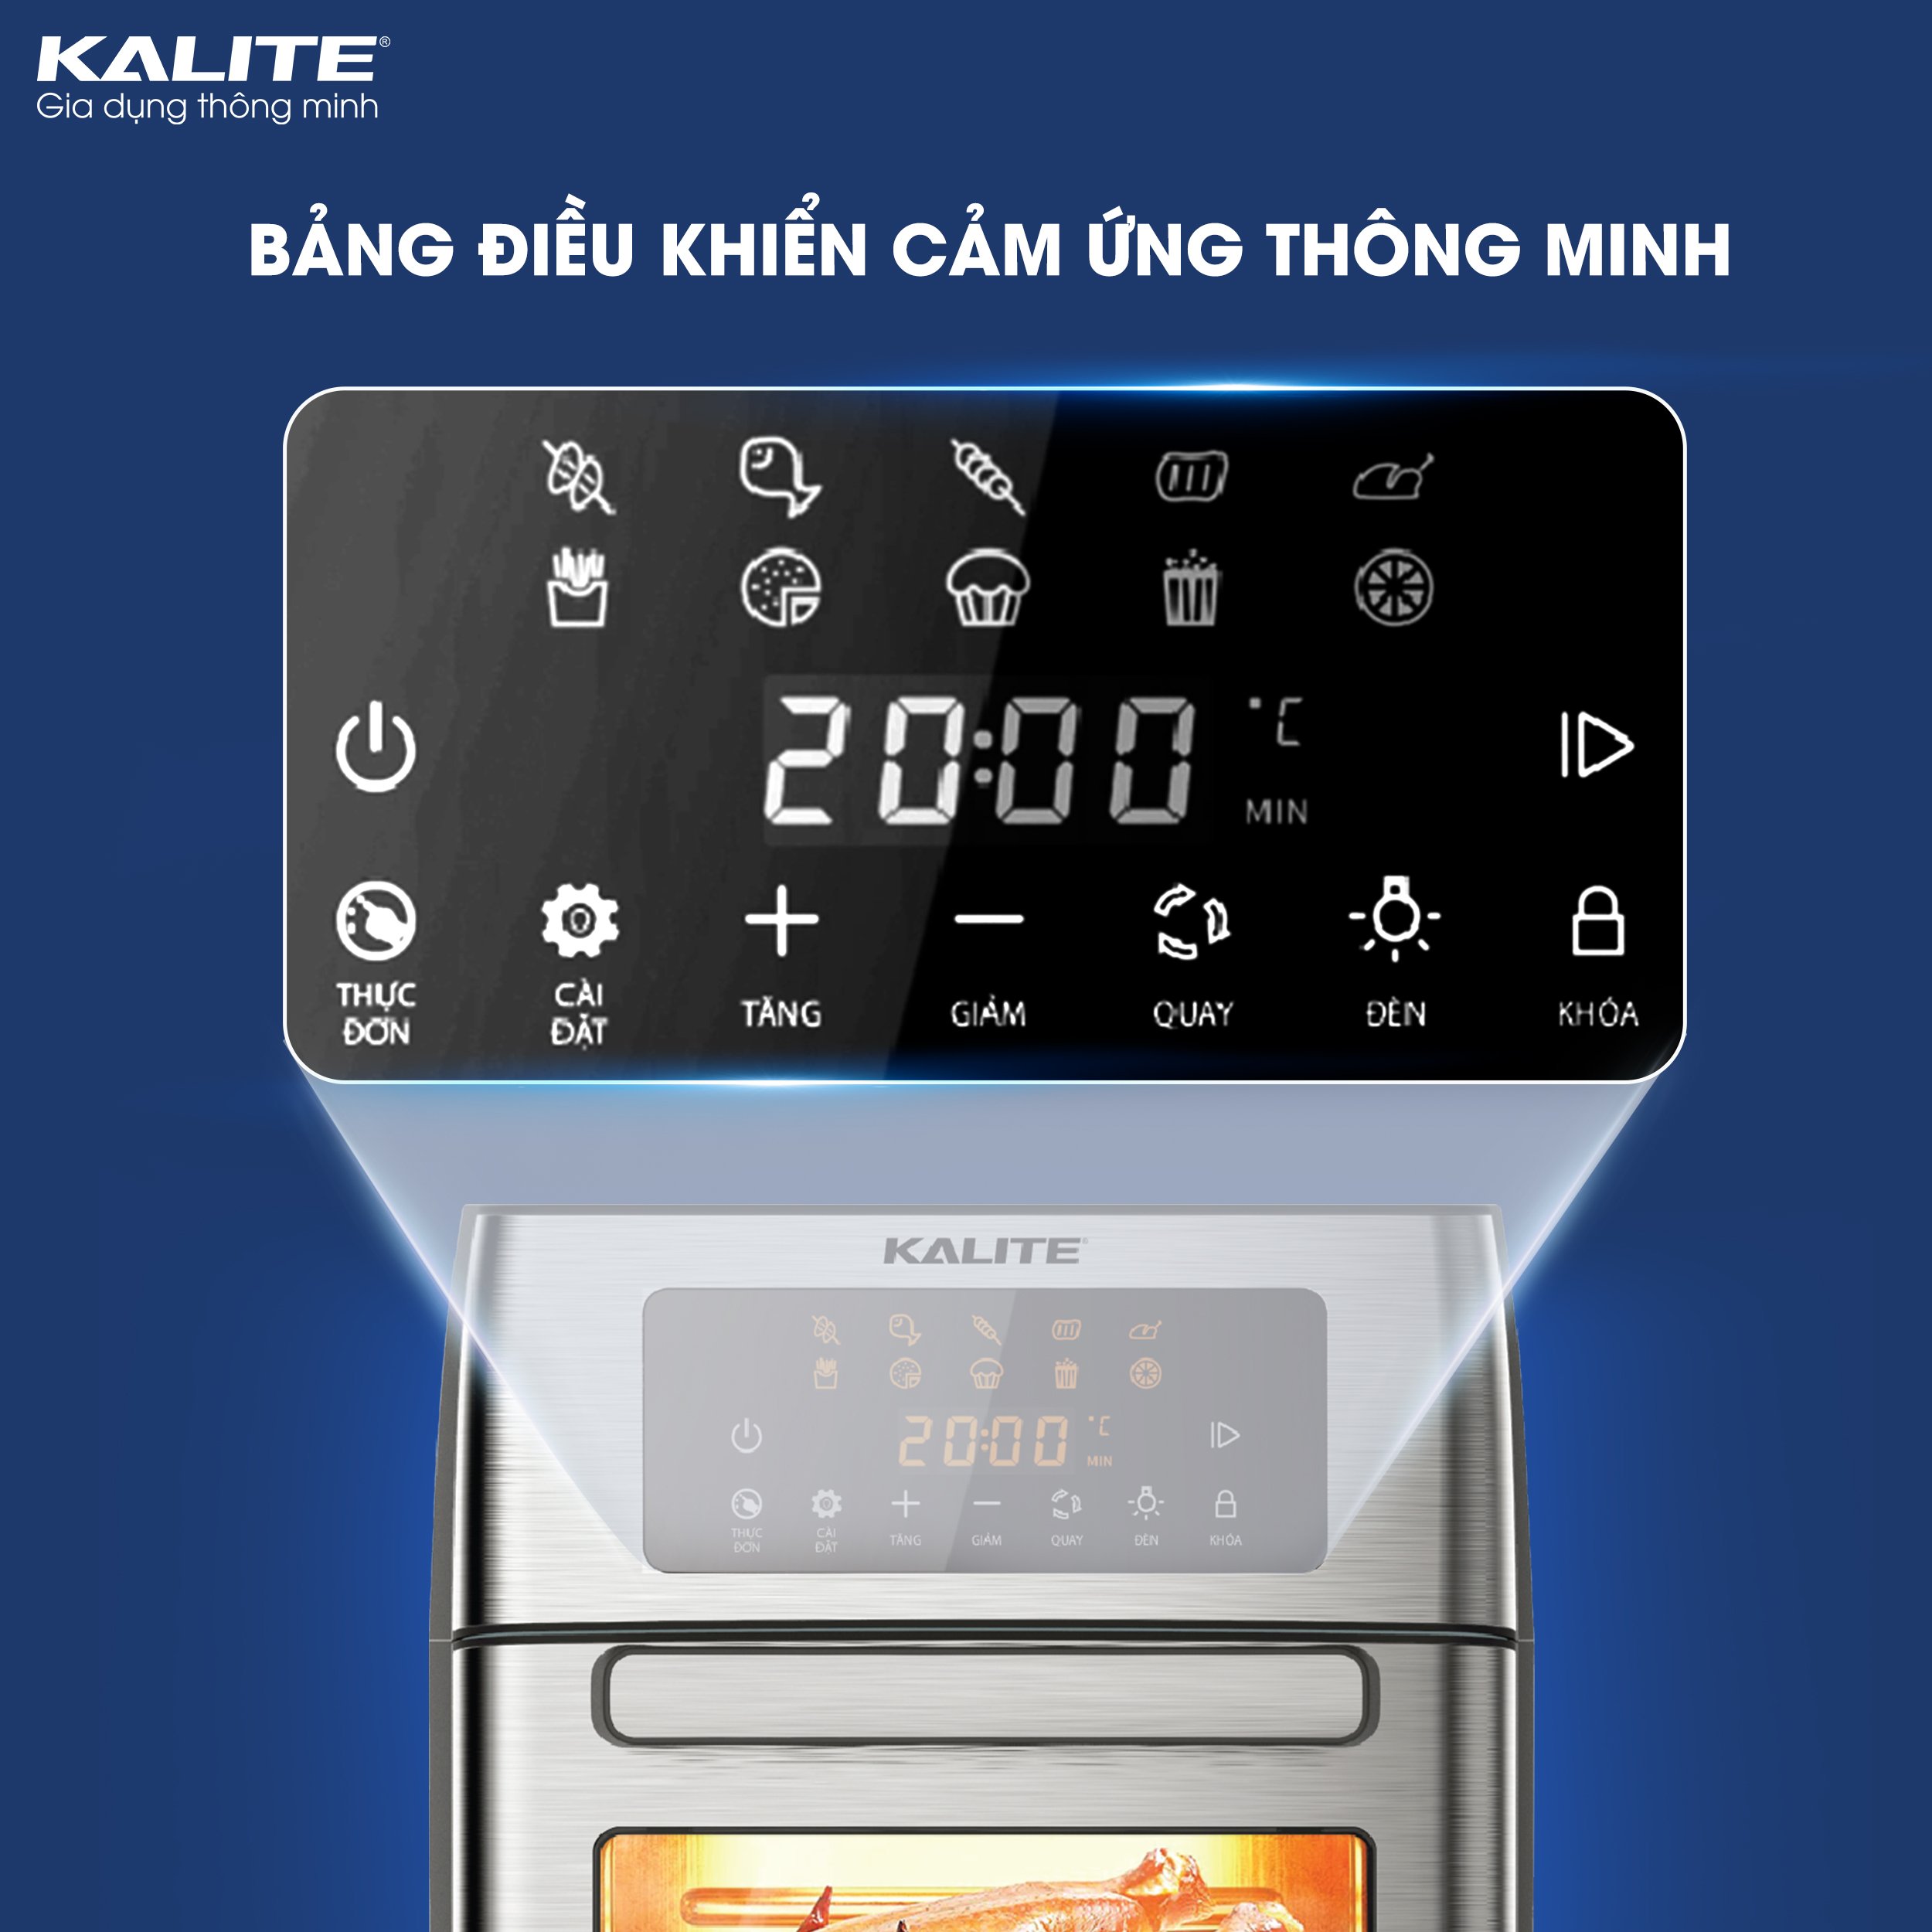 Nồi chiên không dầu Kalite KL-1500setup 10 chức năng chuyên sâu thỏa sức chế biếncông